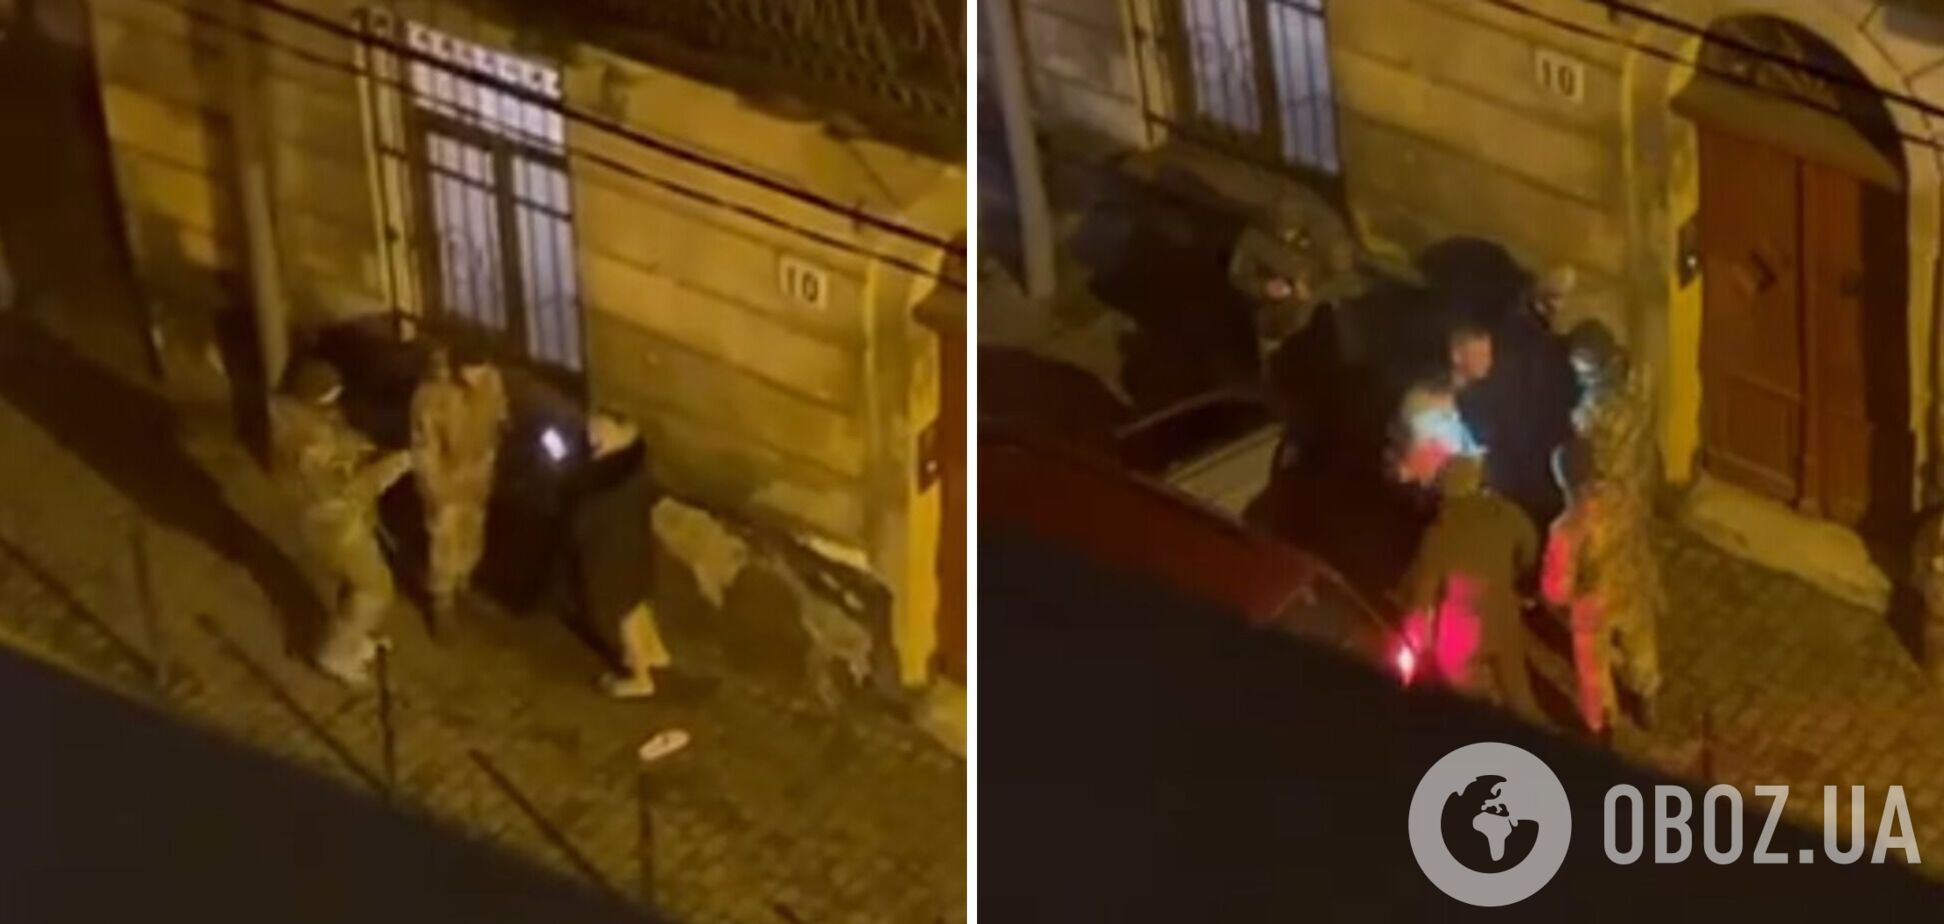 П'ятеро на одного: у мережі з'явилося відео 'пакування' чоловіка працівниками ТЦК у бус у Львові, проводиться перевірка